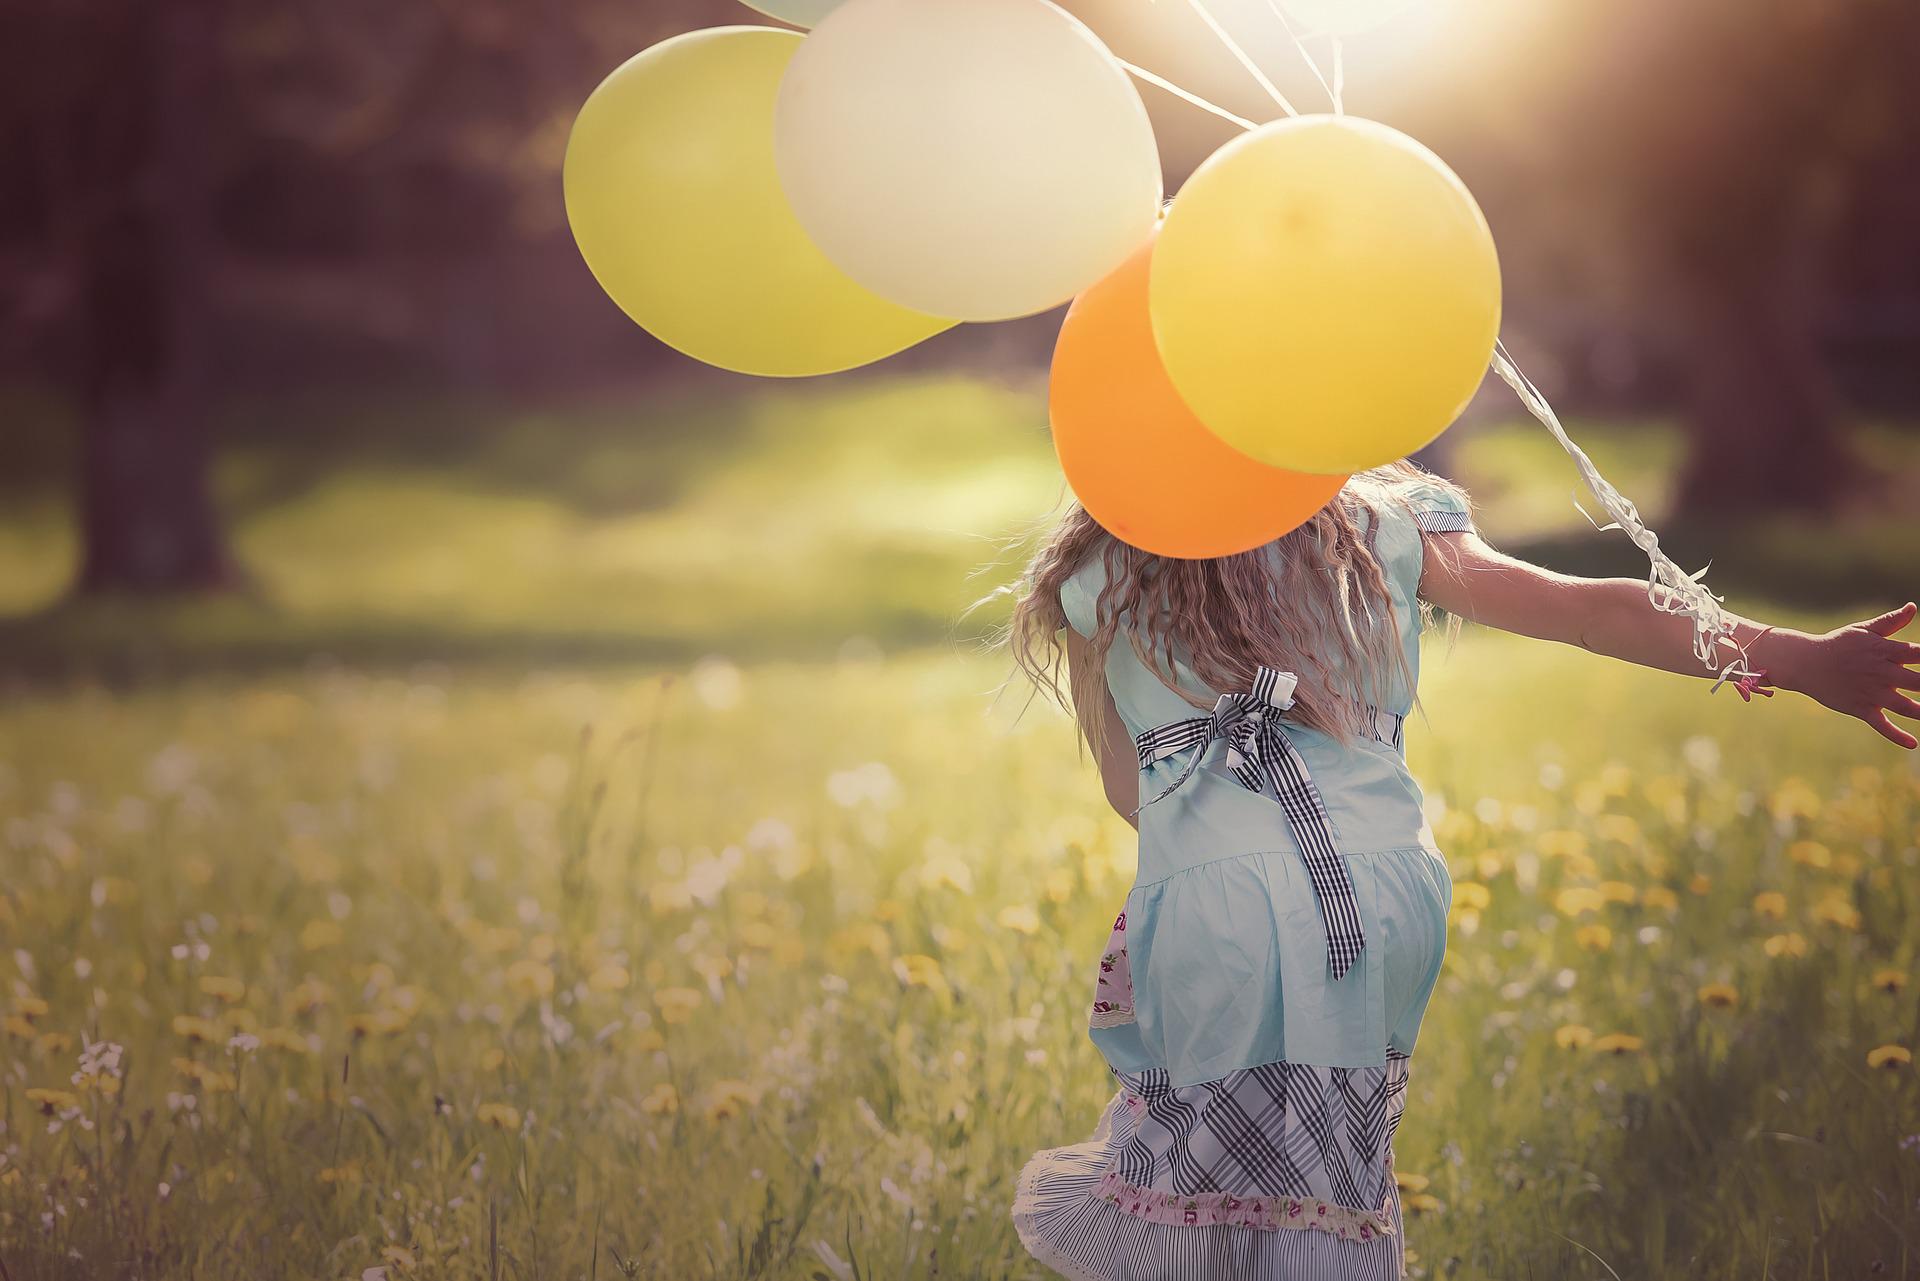 Zabawy z balonem dla dzieci w domu i przedszkolu - jakie ruchowe rozrywki się sprawdzają?